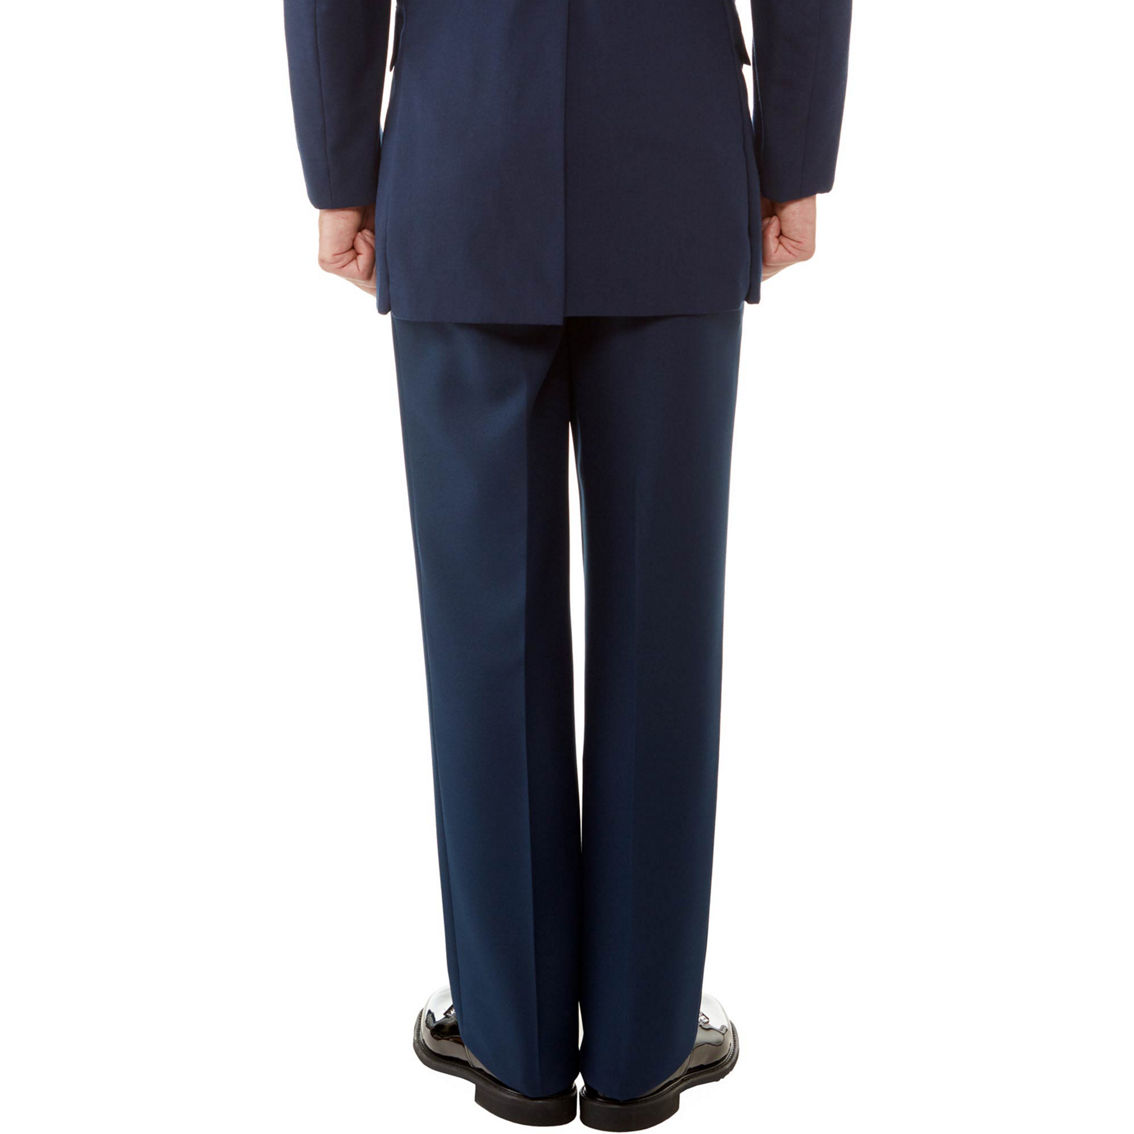 DLATS Air Force Men's Service Dress Uniform Trousers - Image 2 of 4